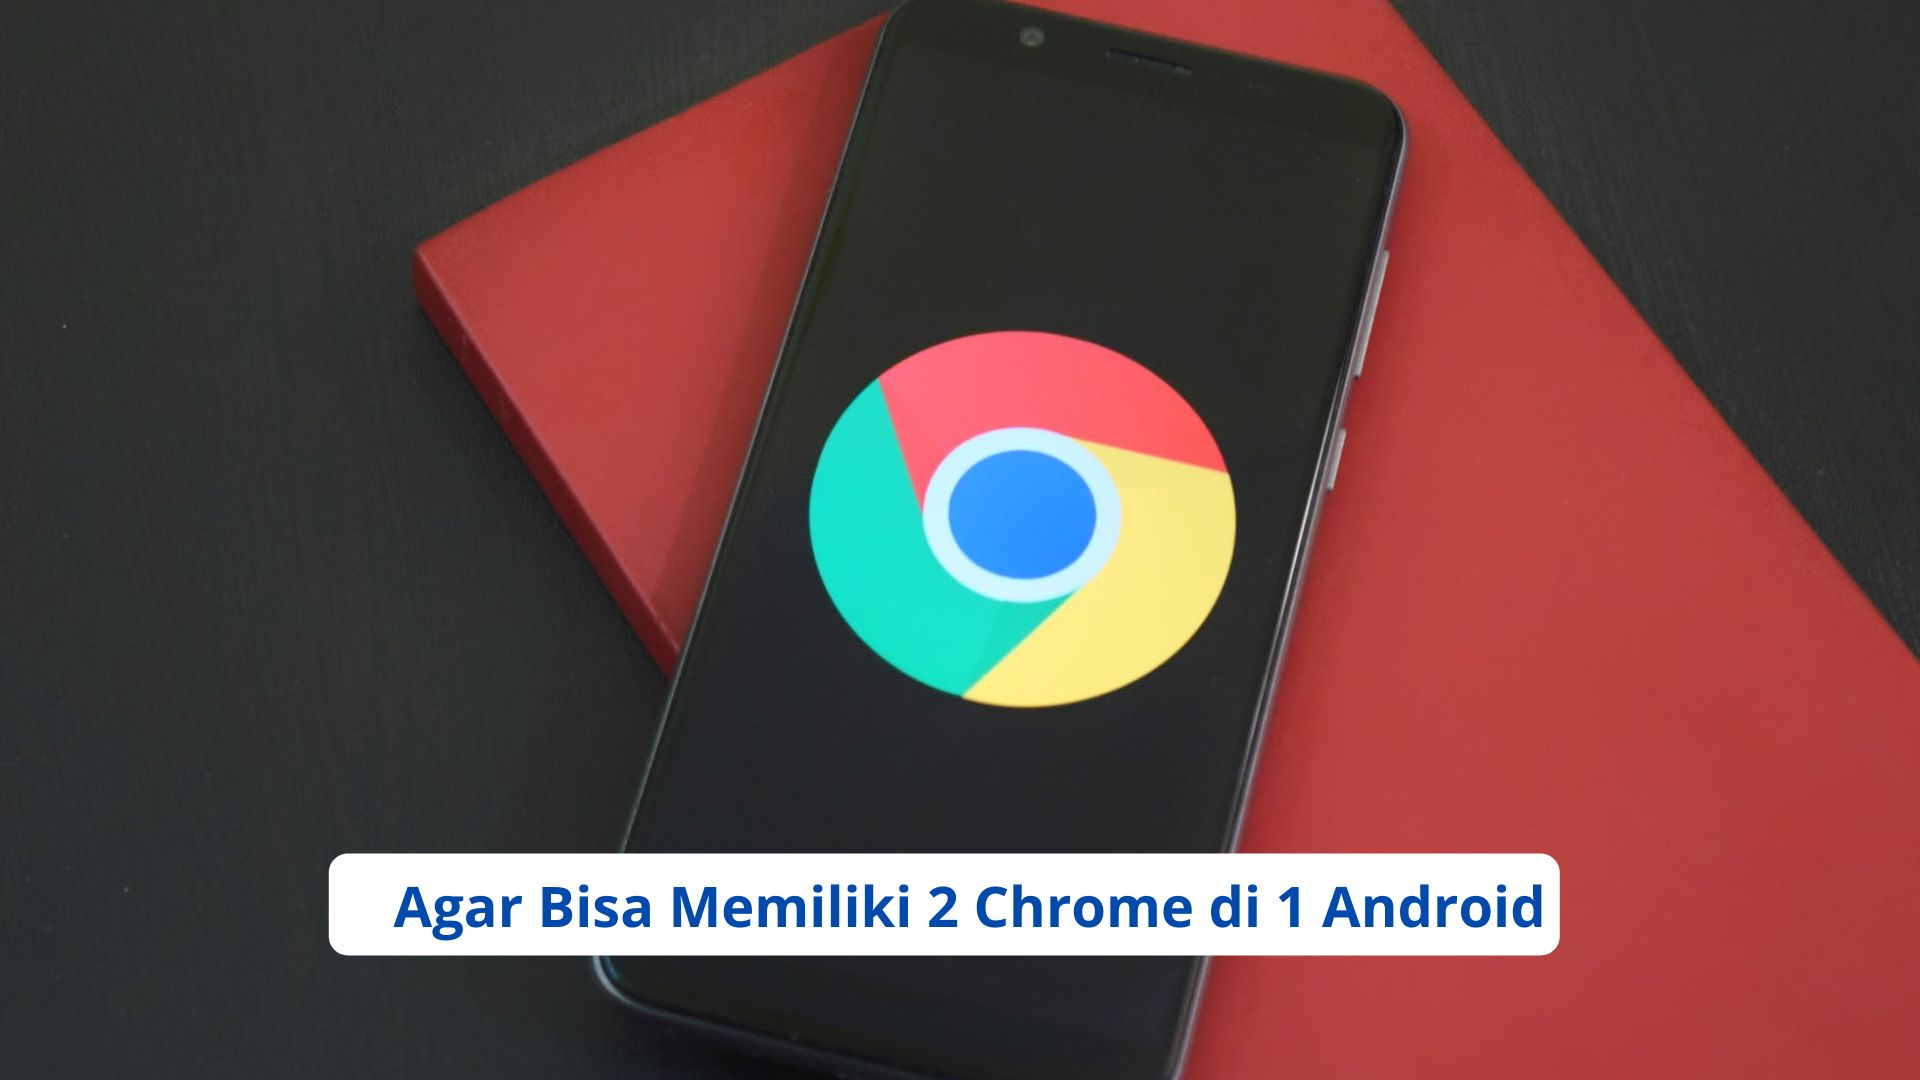 Agar Bisa Memiliki 2 Chrome di 1 Android